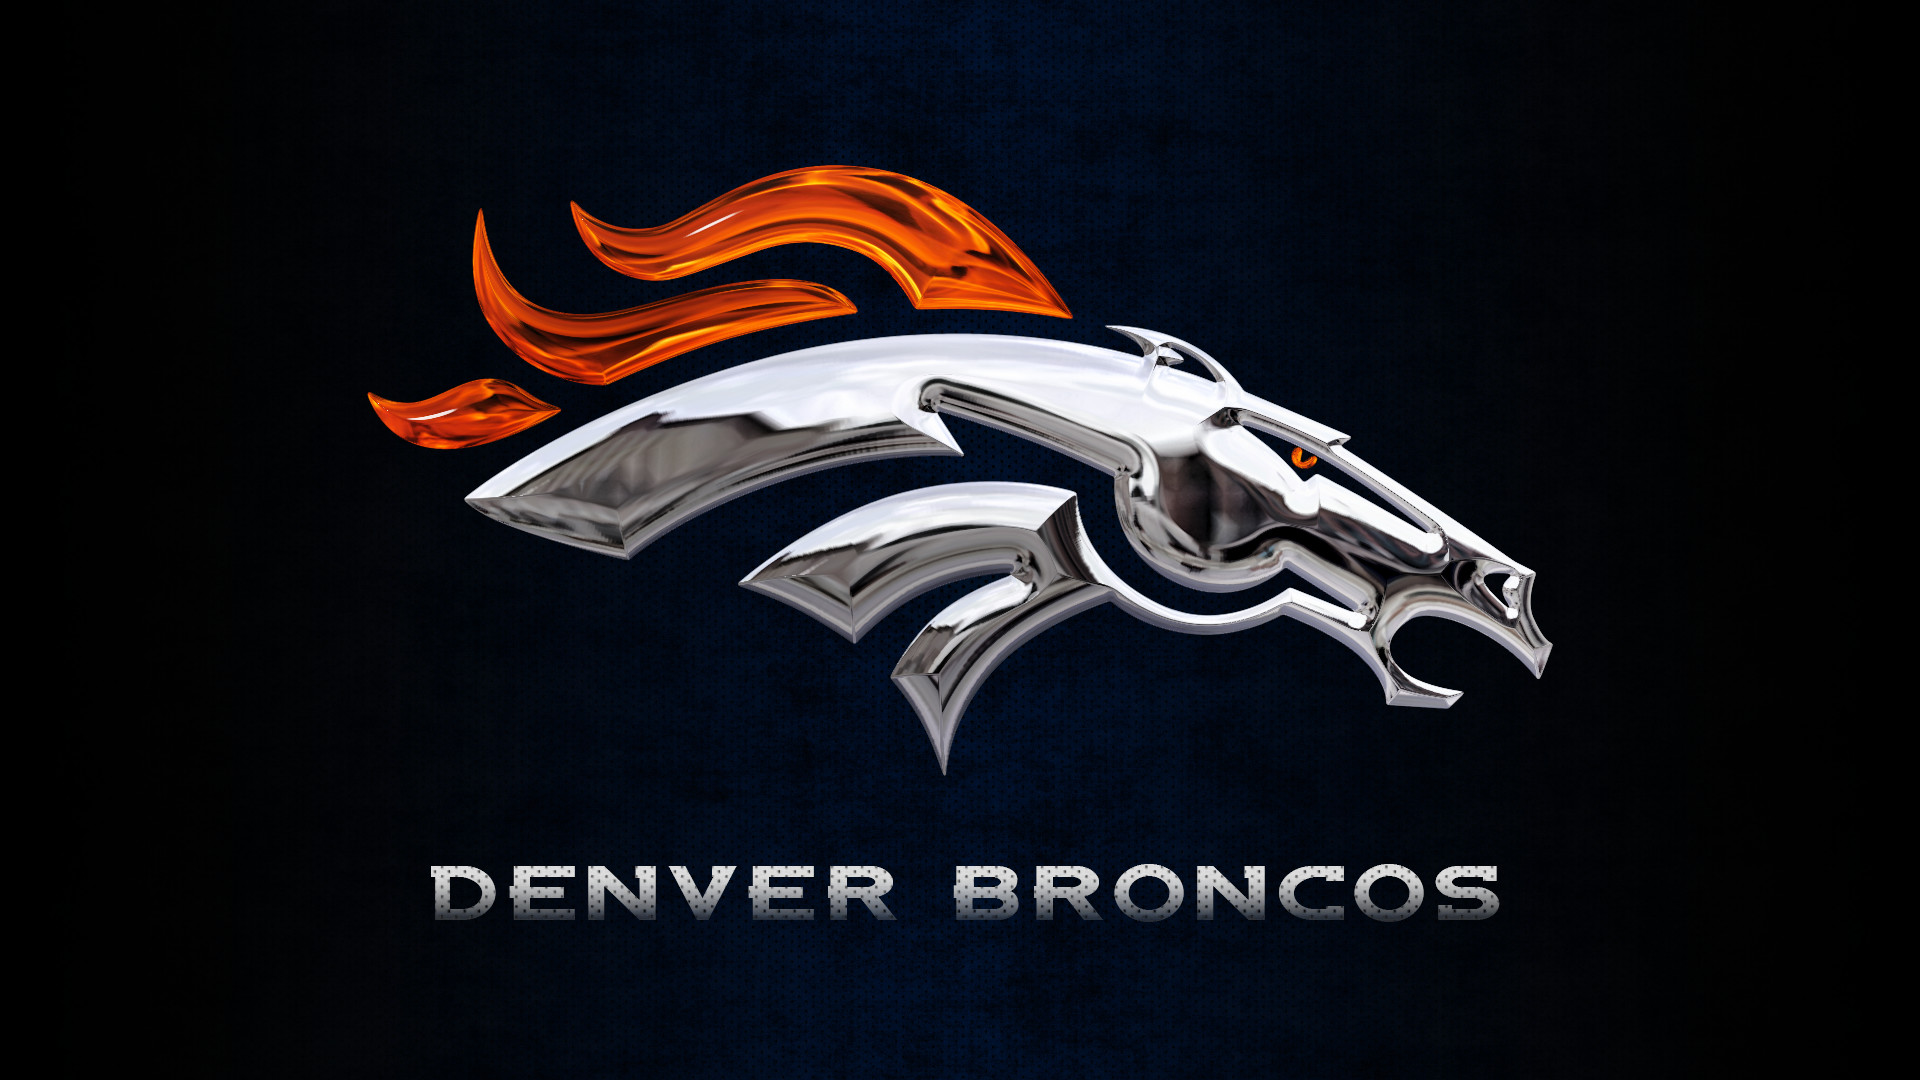 1920x1080 Broncos Denver Logo Wallpaper 1920Ã1080 - High Definition Wallpaper